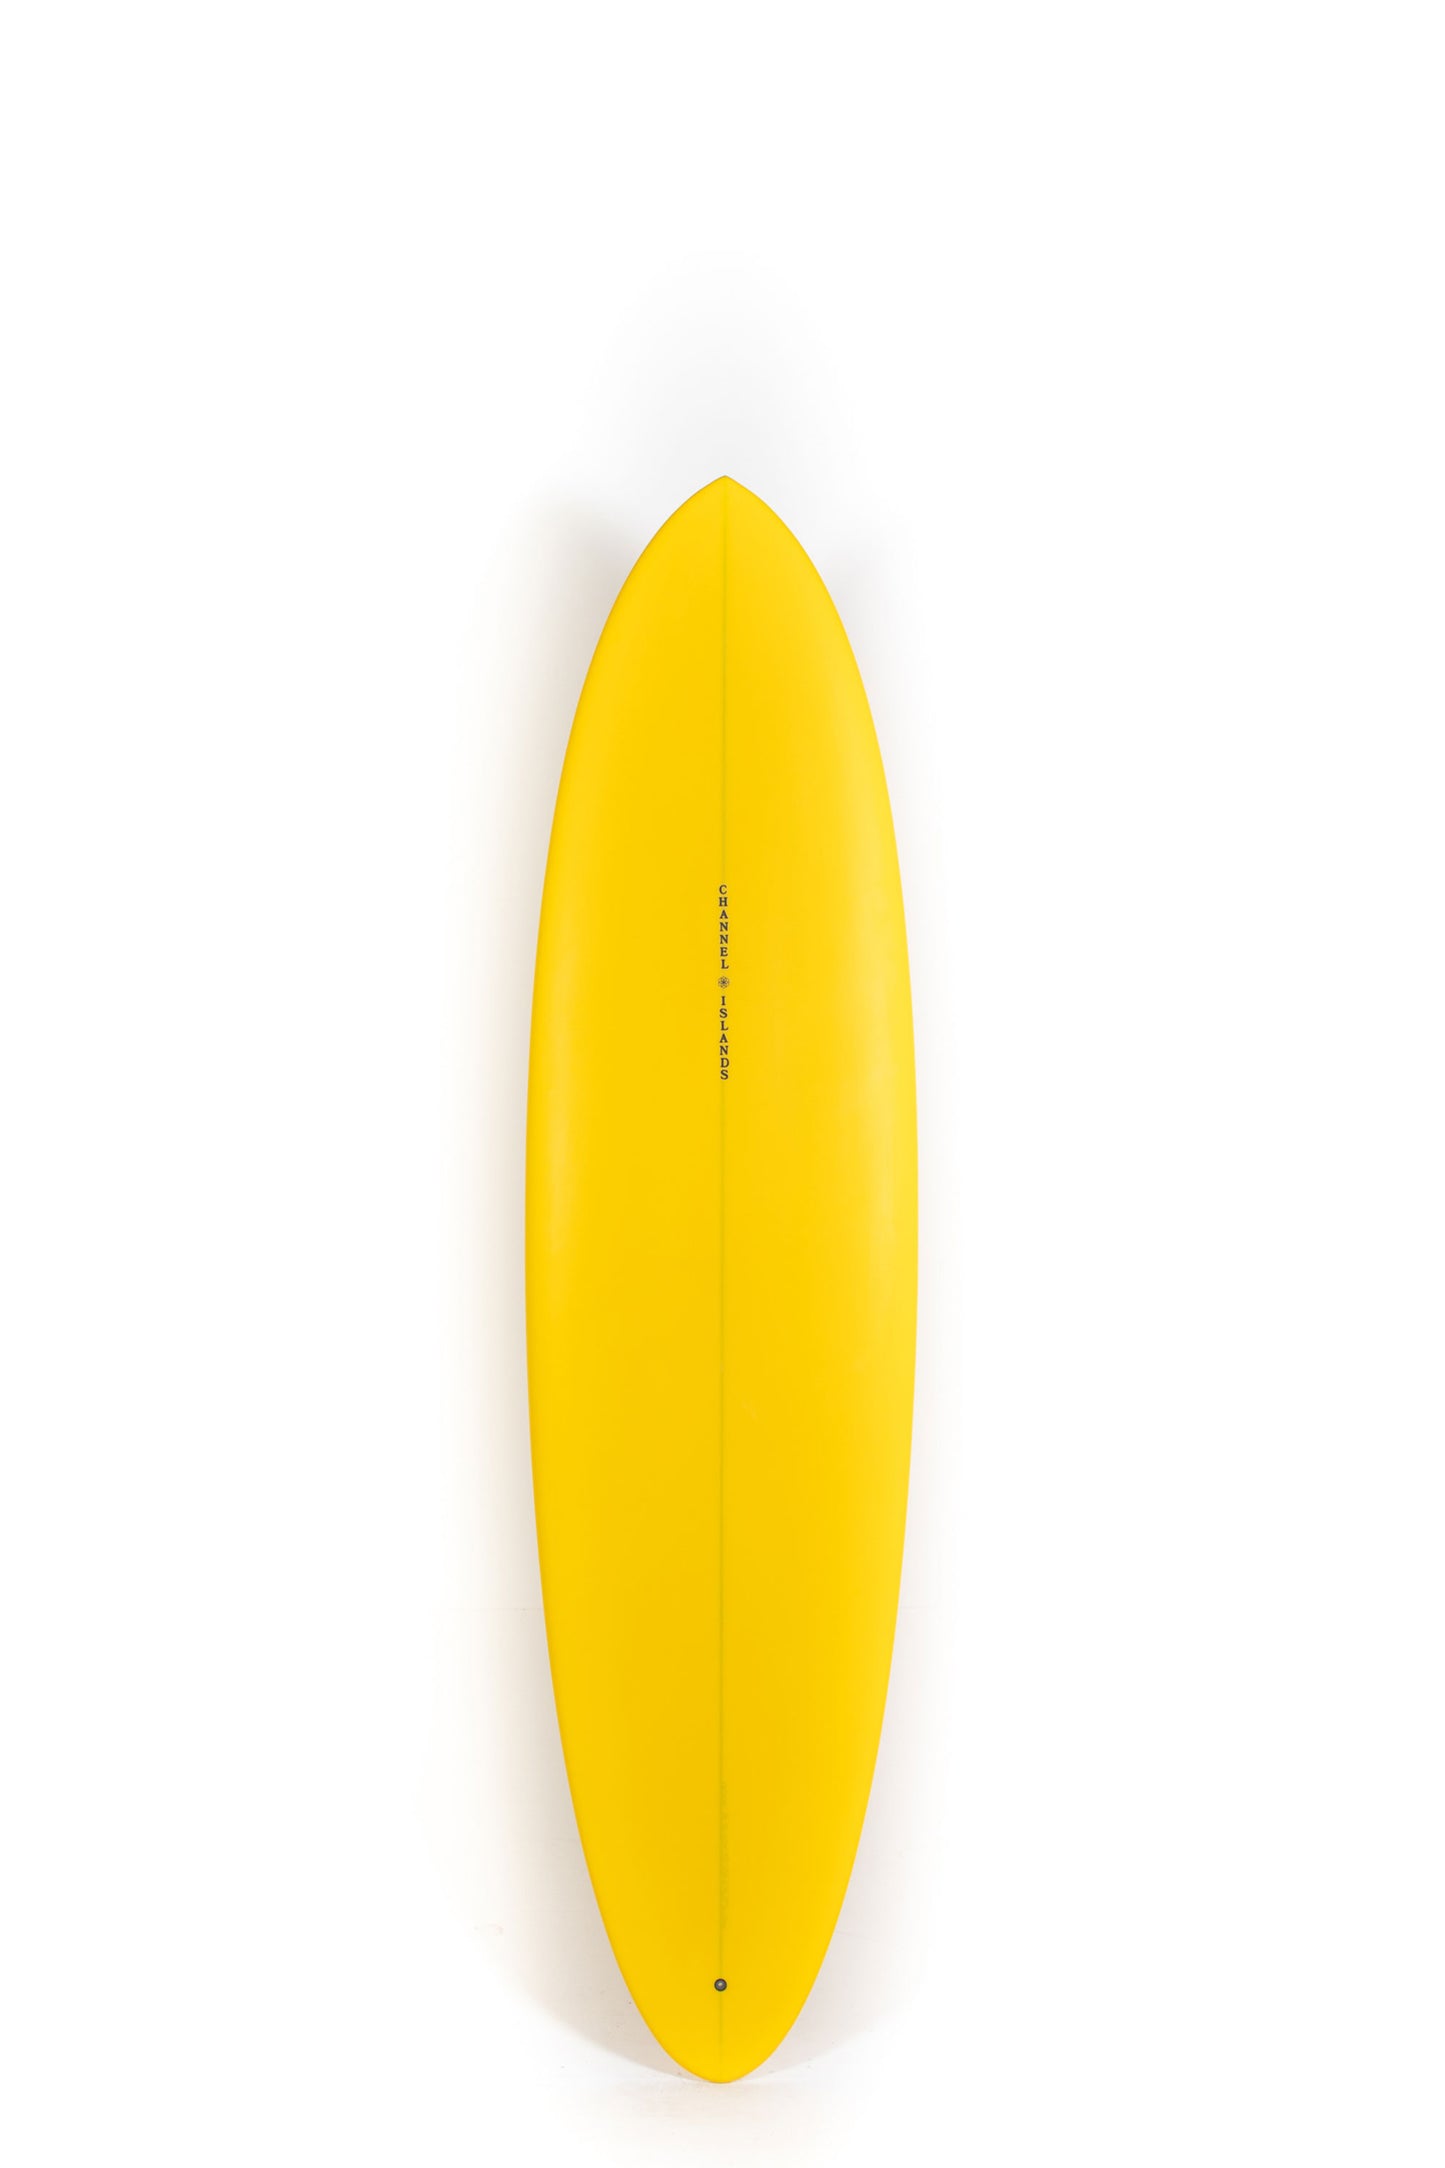 Pukas Surf Shop - Channel Islands - CI MID - 7'2" x 21 1/4 x 2 13/16 - 47,3L - CI26825